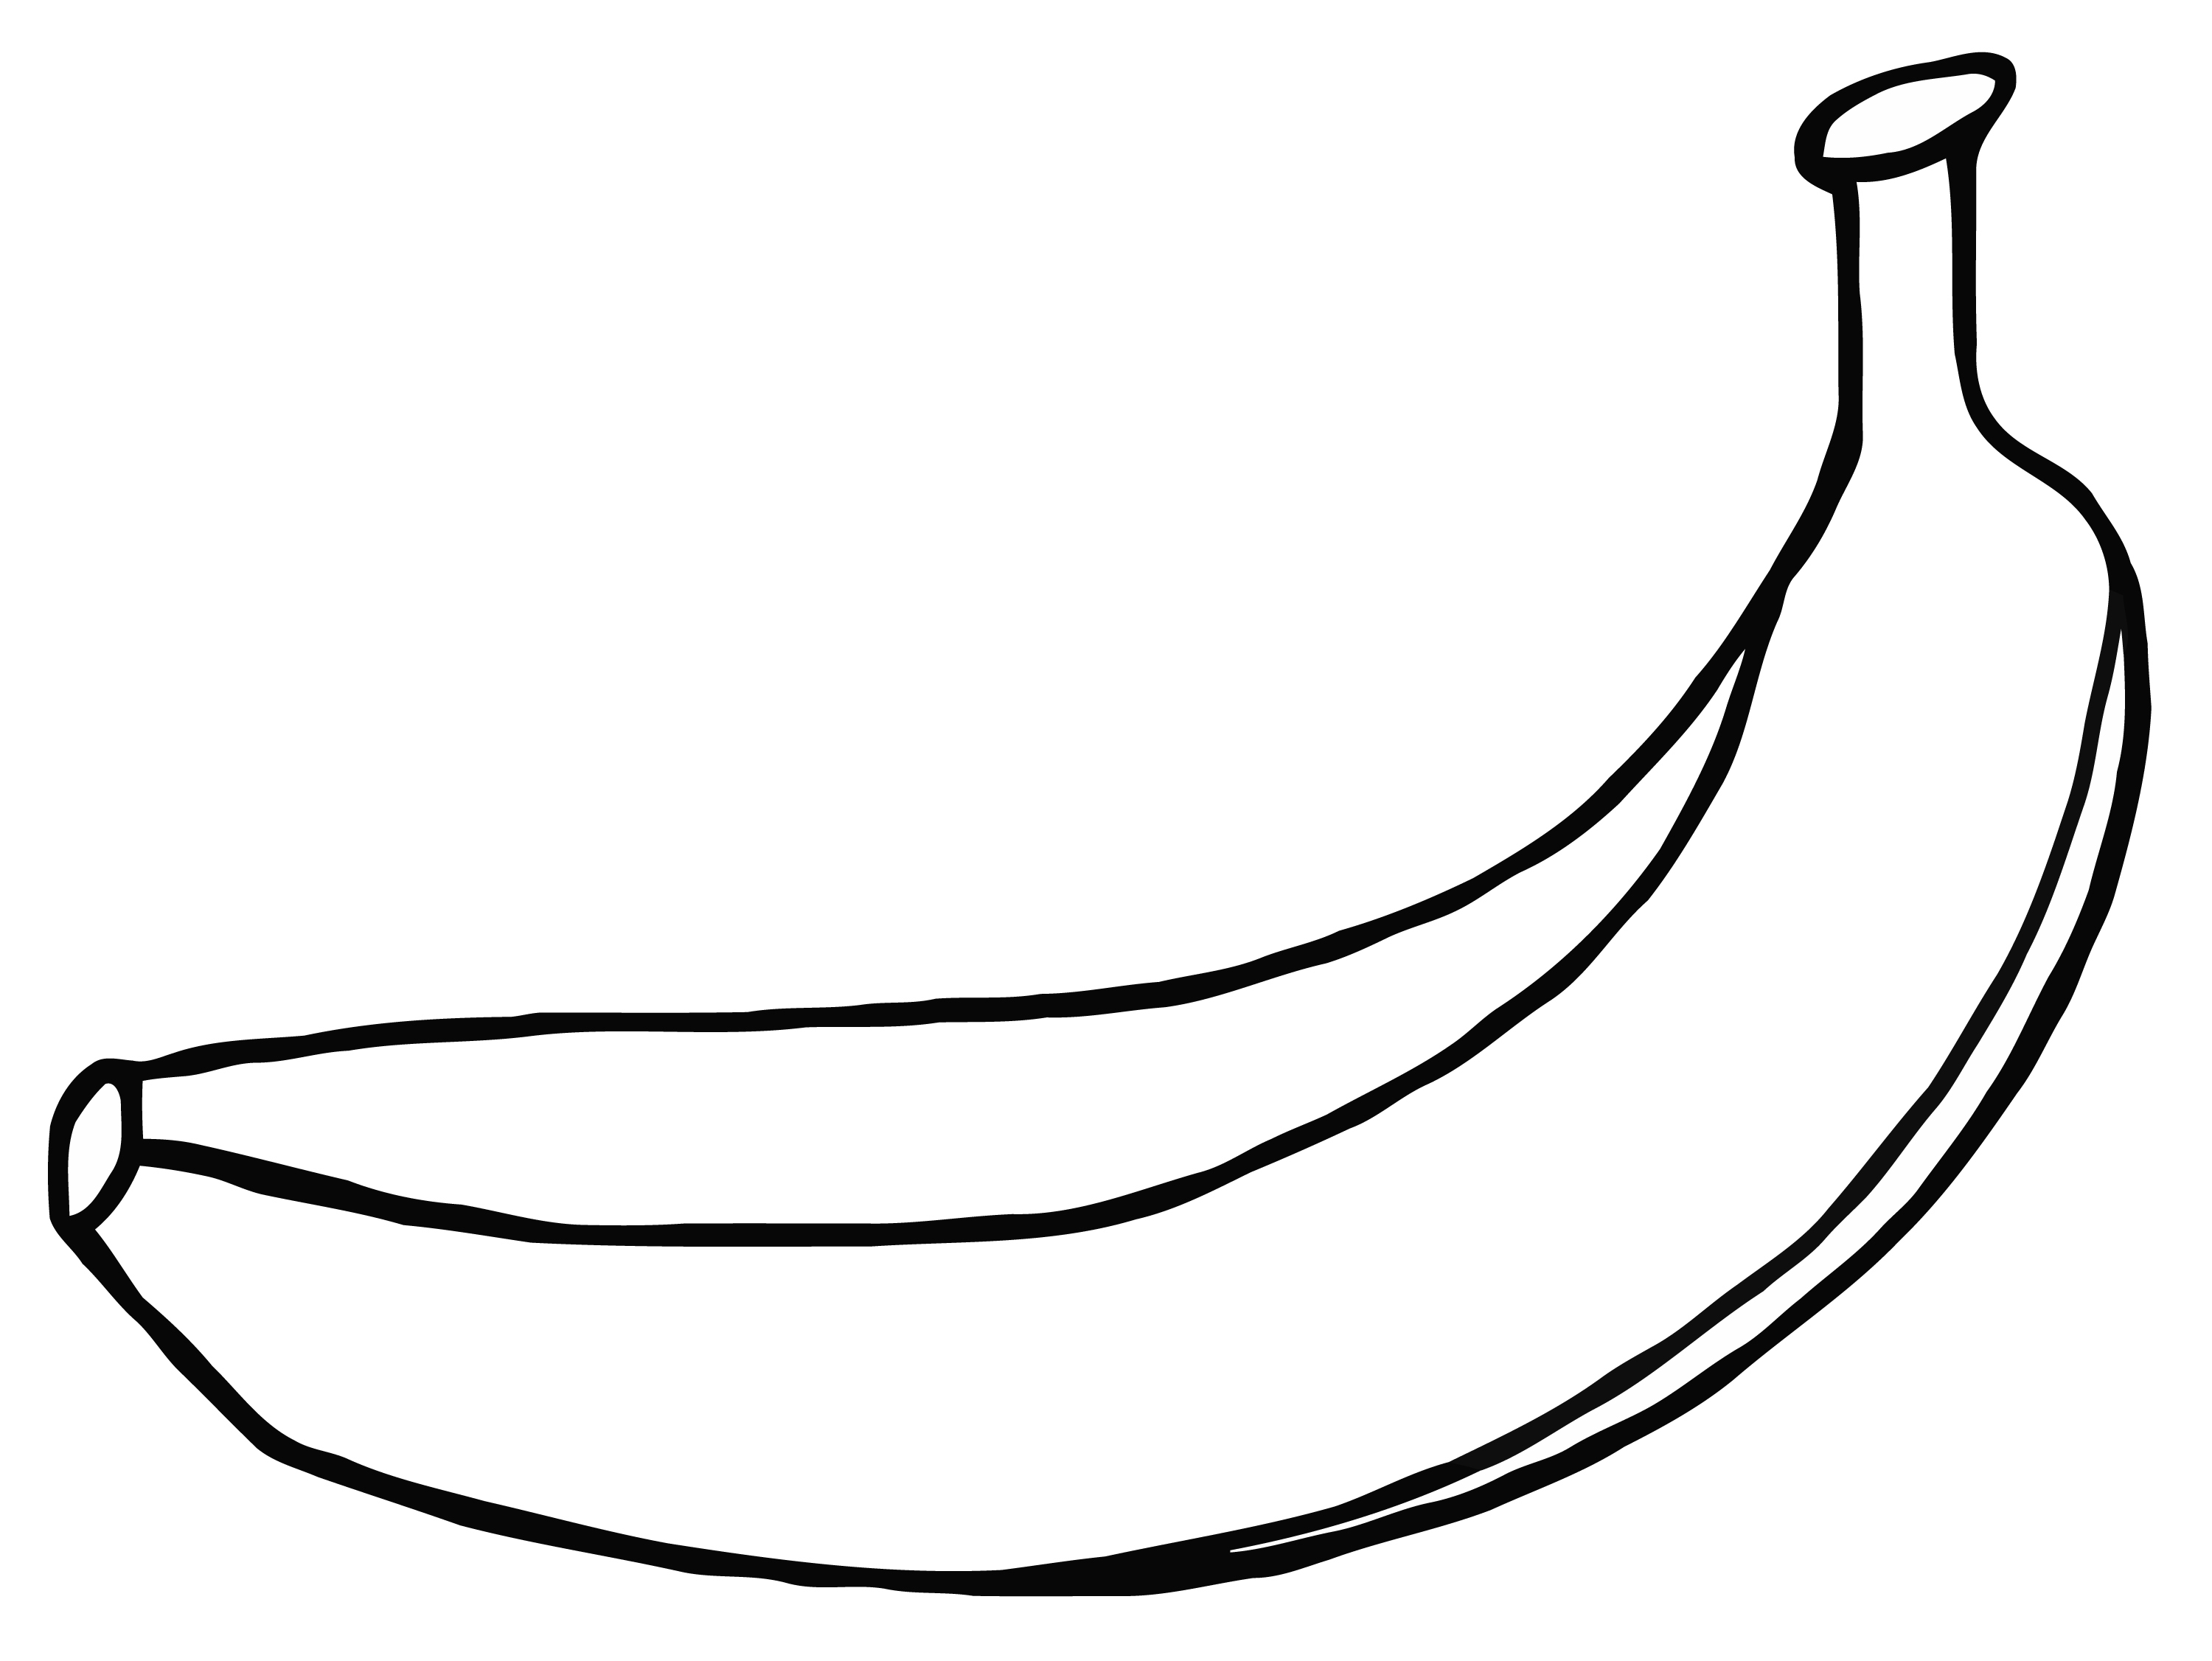 Banana drawing images.